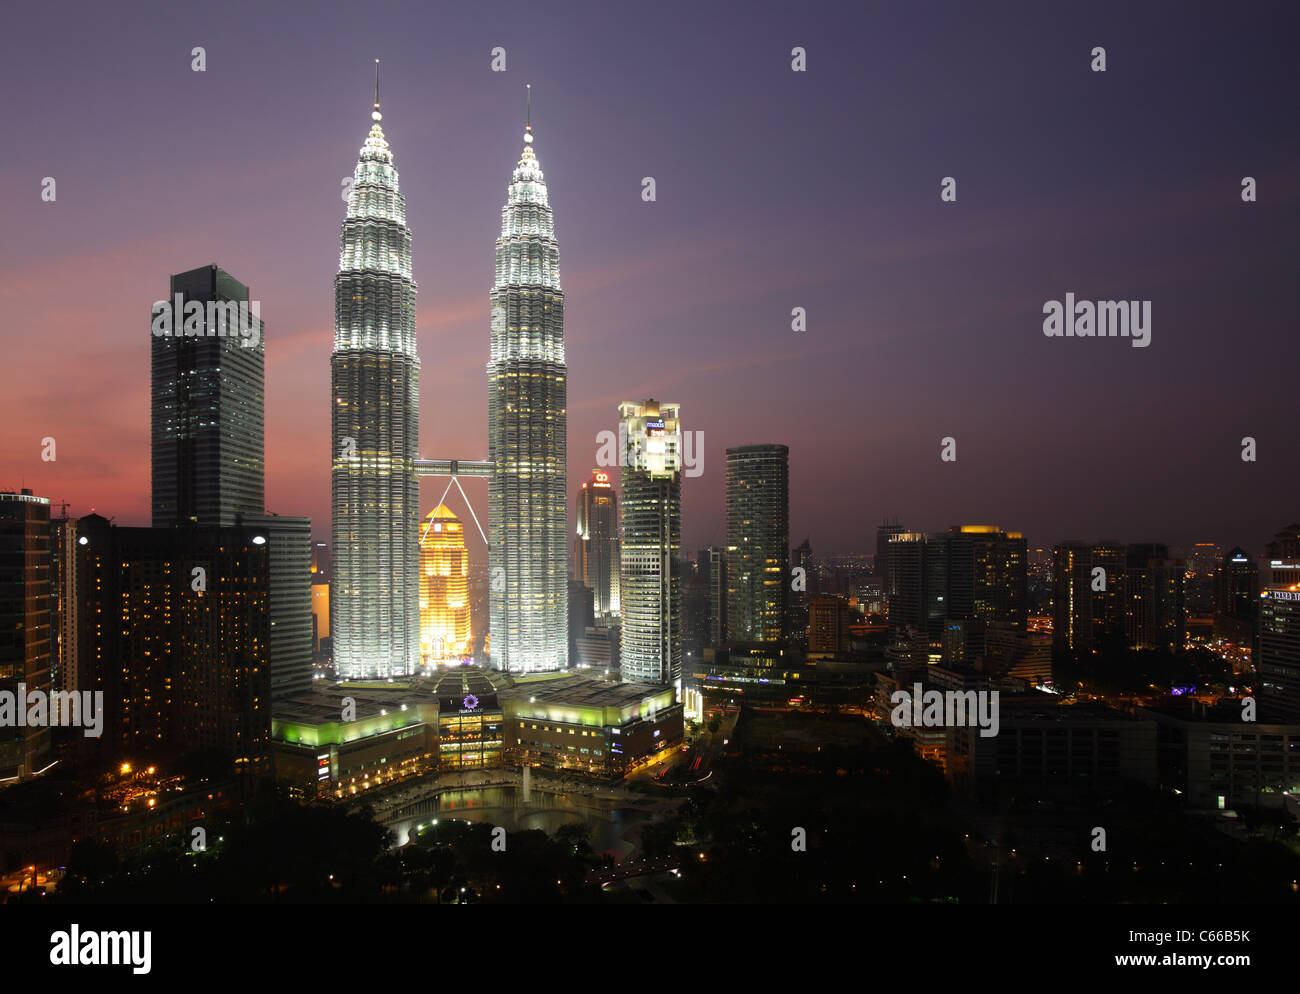 Menara Petronas Towers, Kuala Lumpur, Malaysia Stockfoto